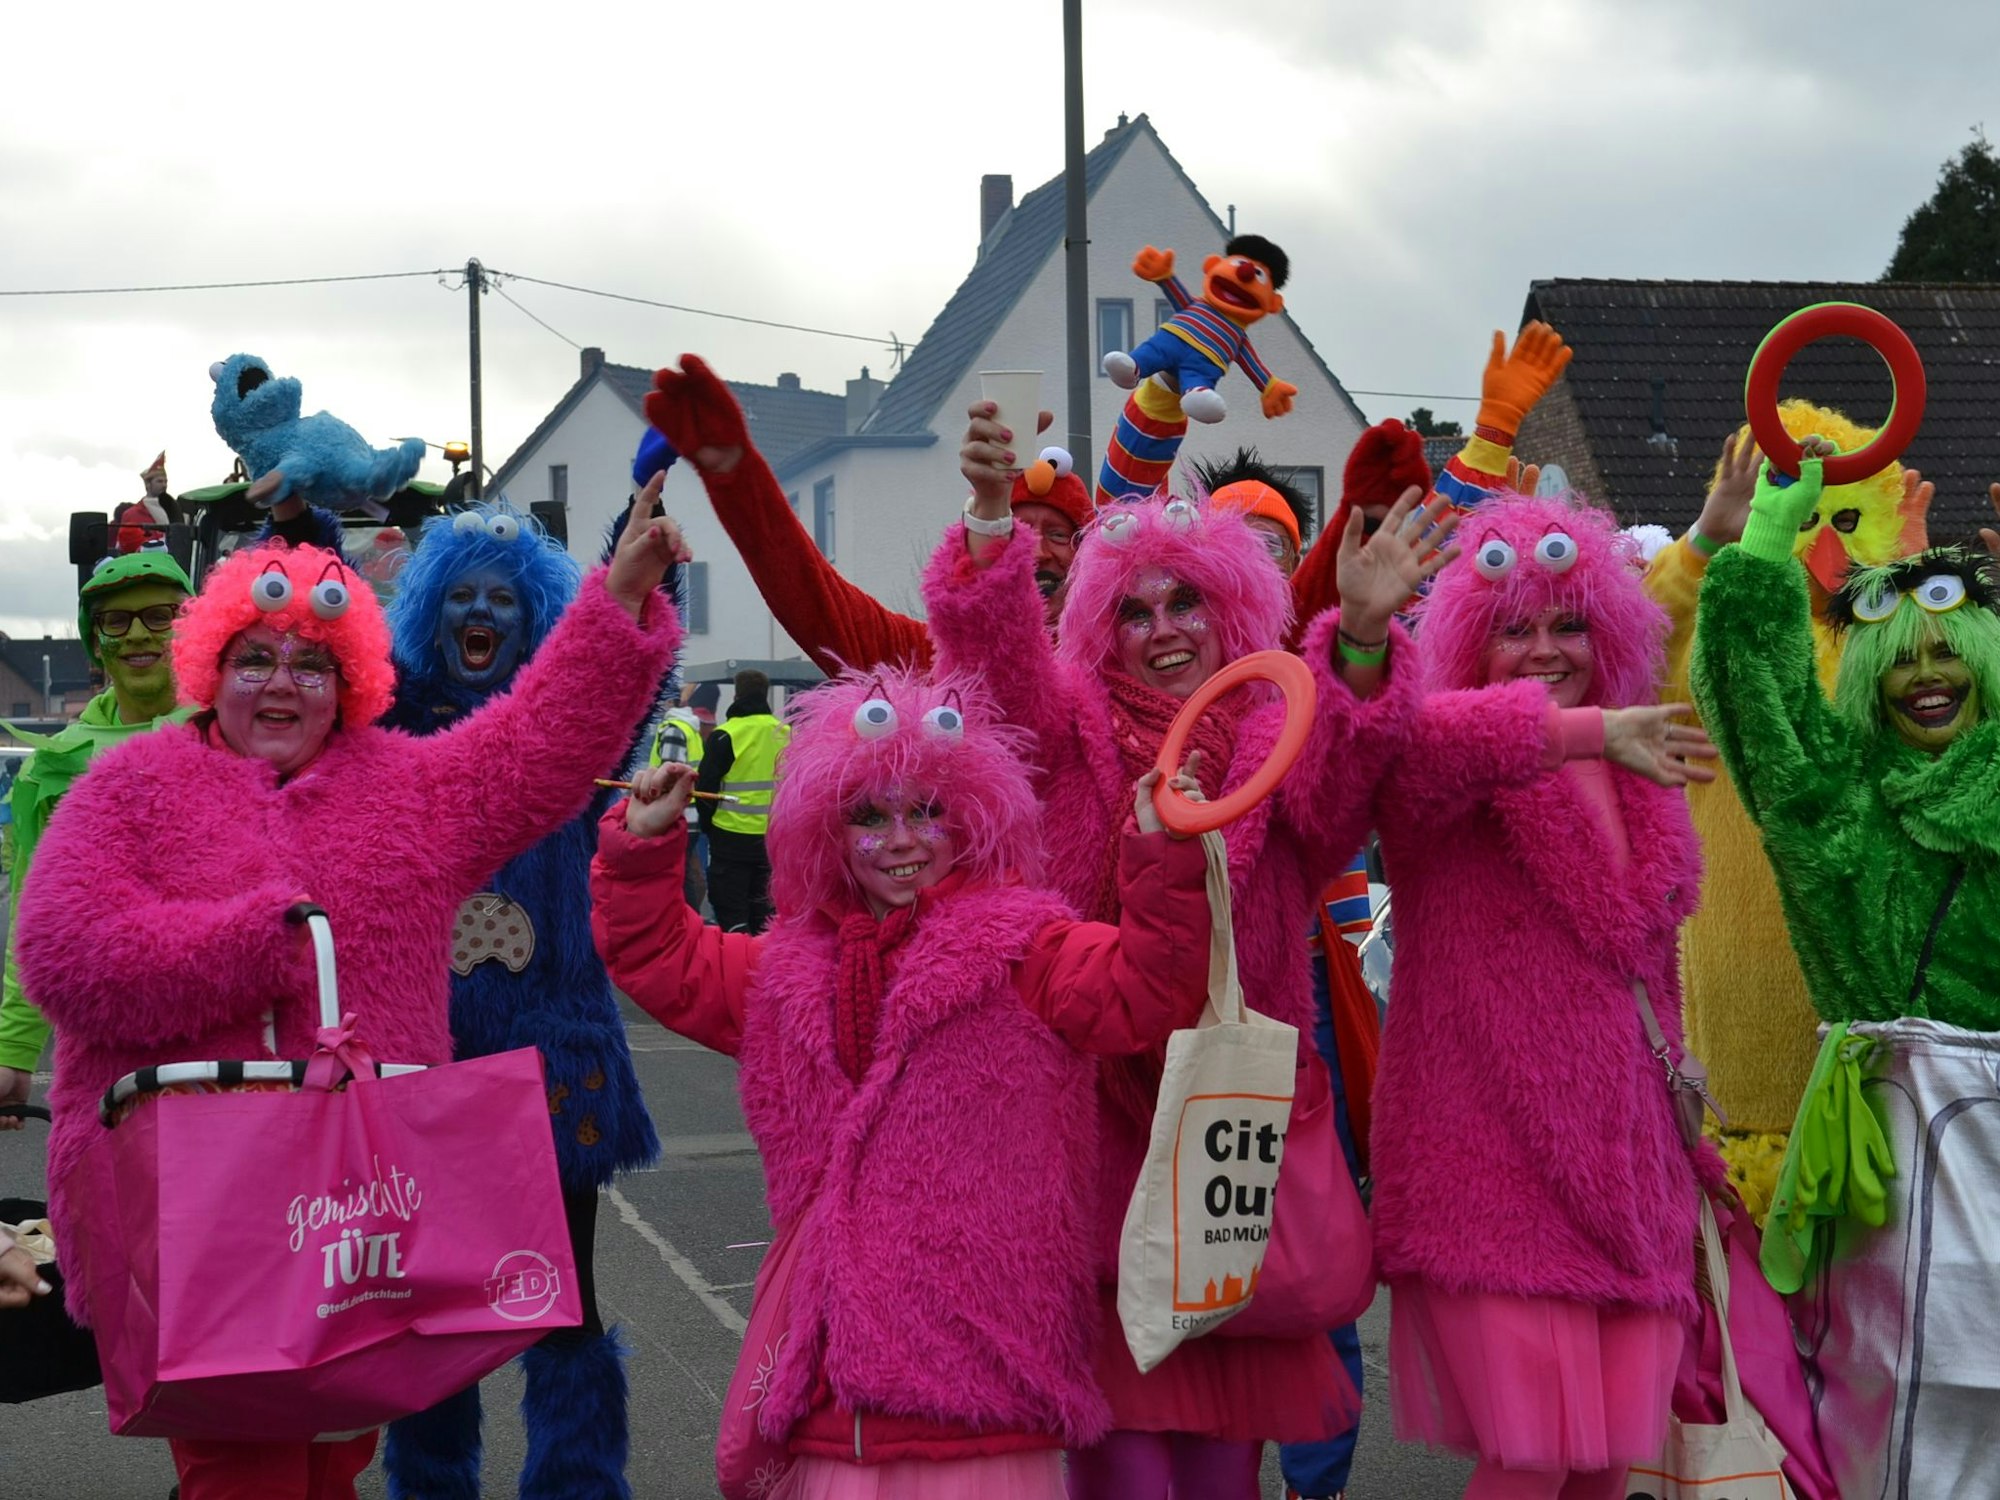 Plüsch-Kostüme in pink, blau, gelb und grün tragen die Karnevalisten, die die Sesamstraße als Motto haben.